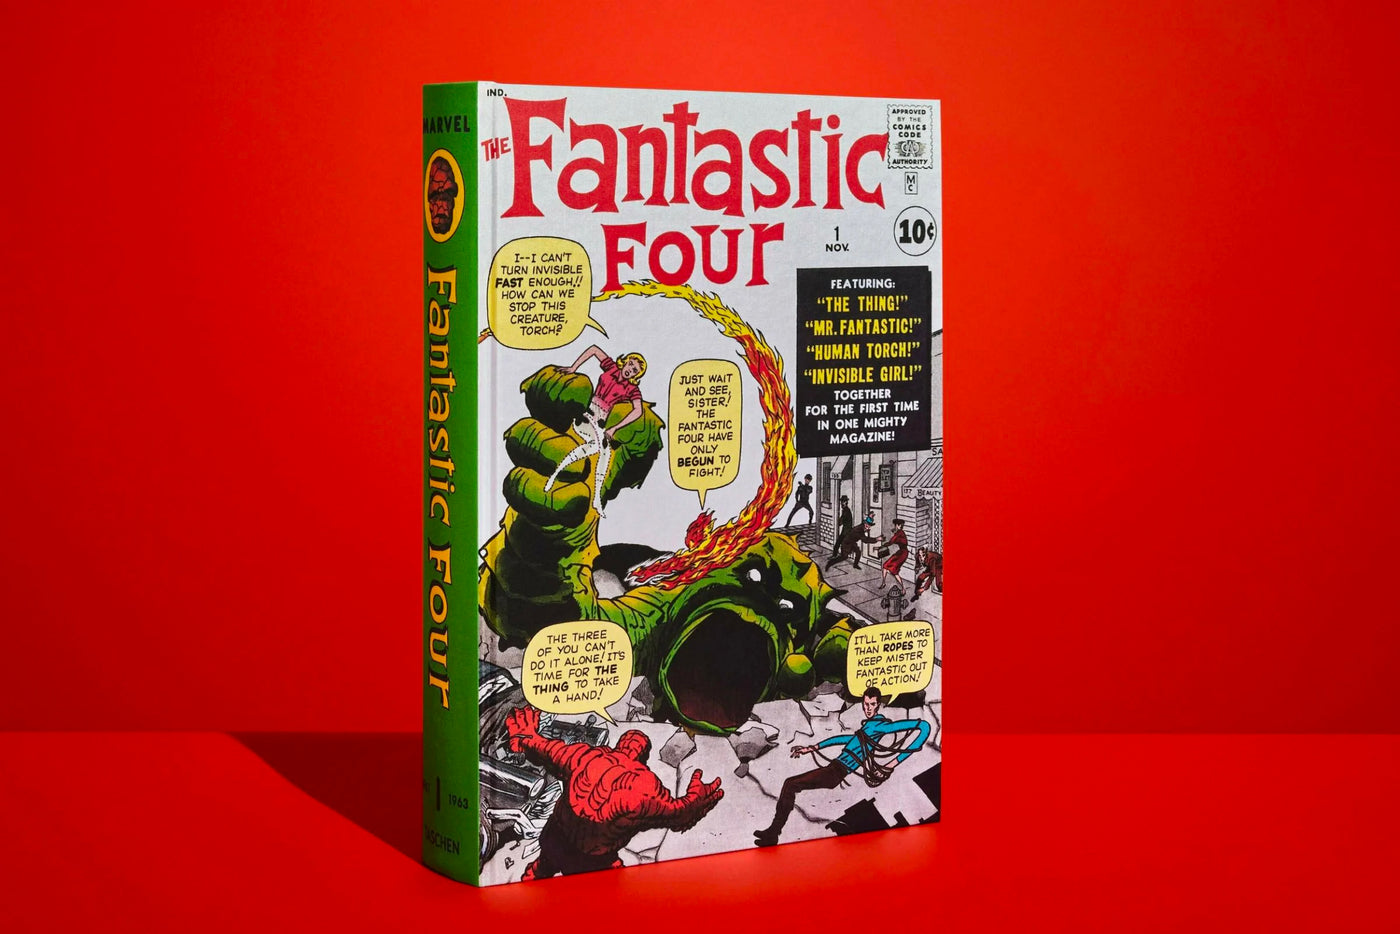 Fantastic Four Vol. 1 1961-1963, Marvel Comics Library